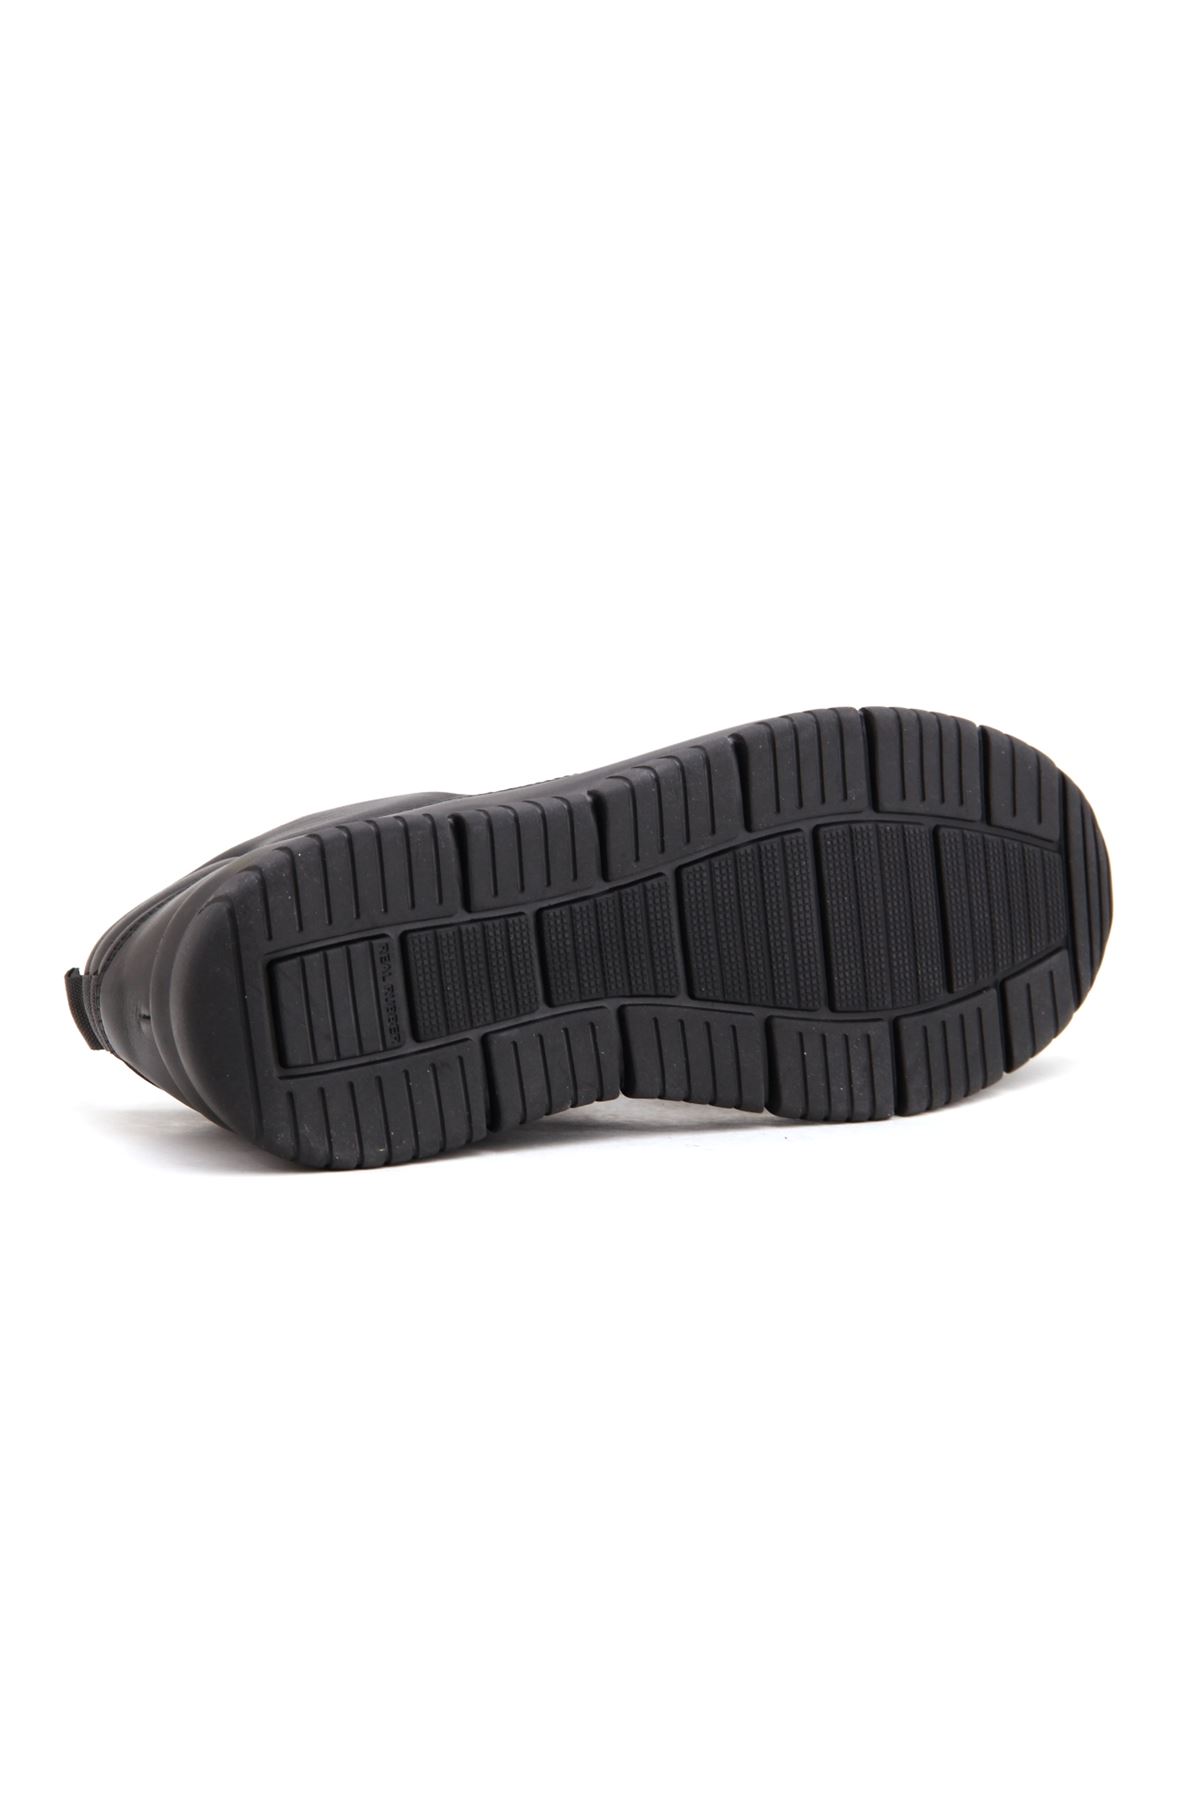 Libero 3891 Günlük Erkek Ayakkabı - Siyah